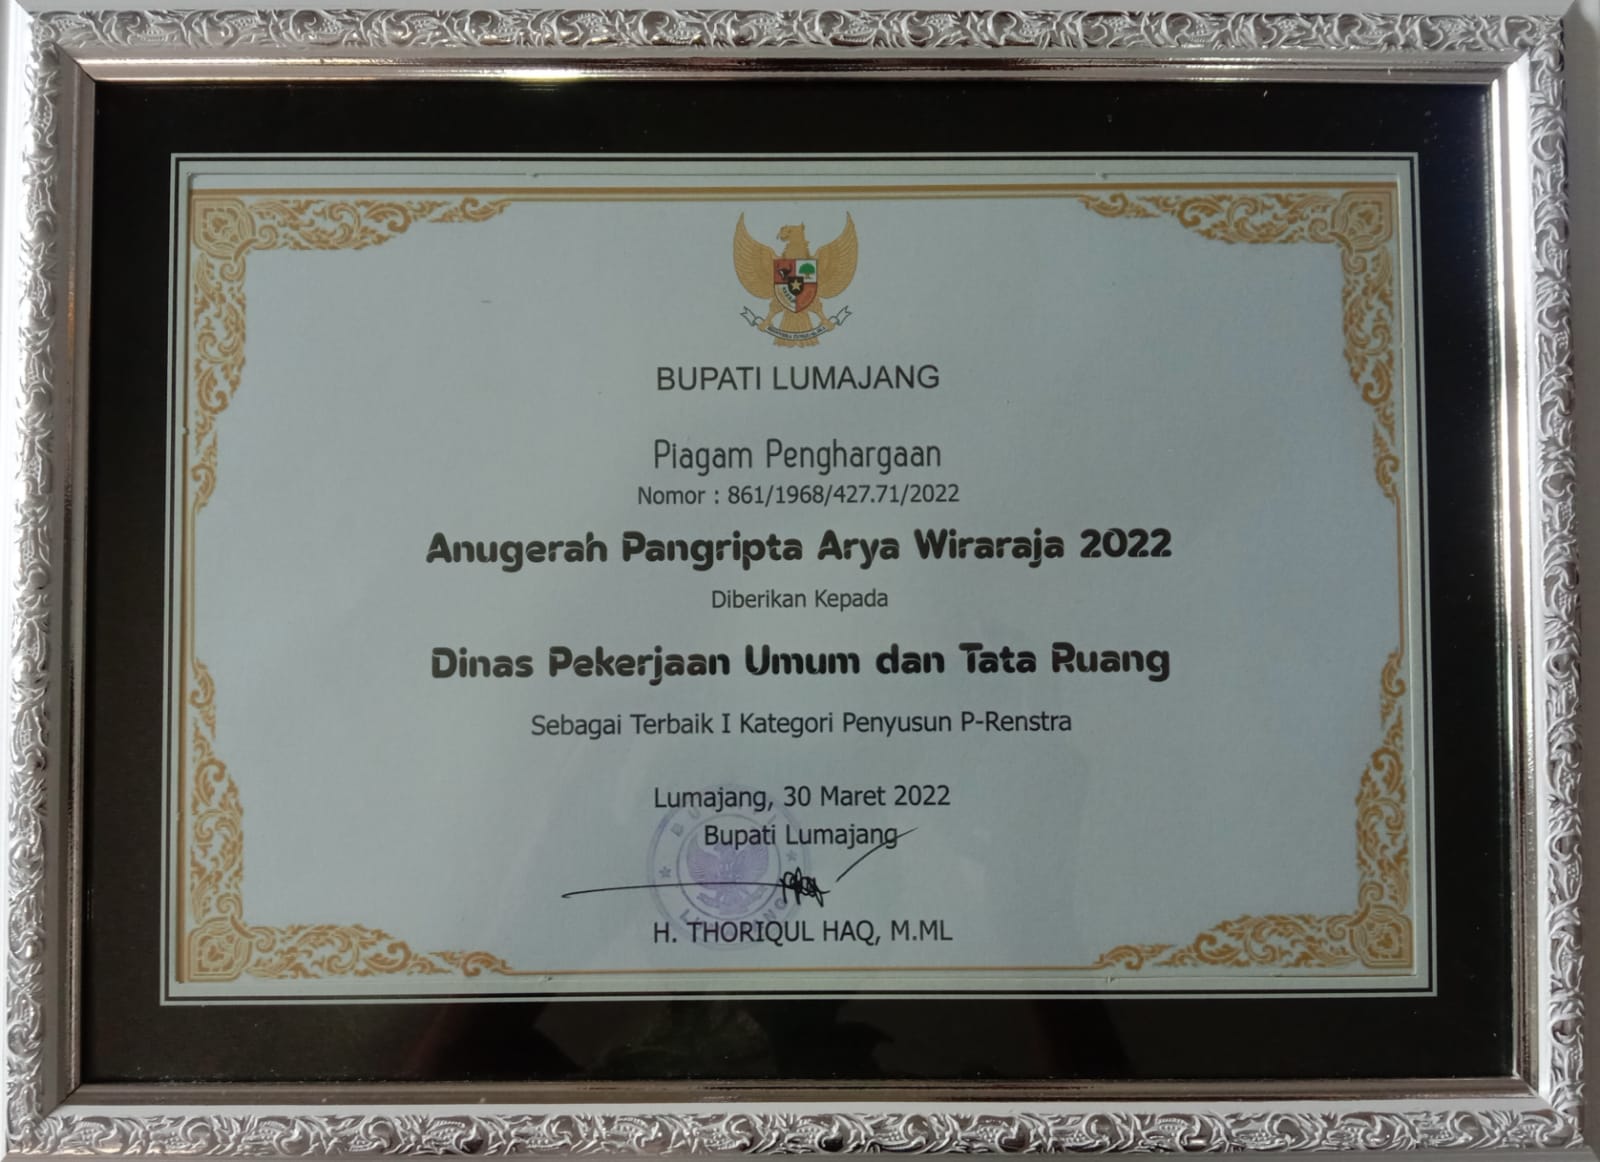 Piagam Penghargaan Anugerah Pangripta Arya Wiraraja 2022 sebagai Terbaik I Kategori Penyusun P-Renstra